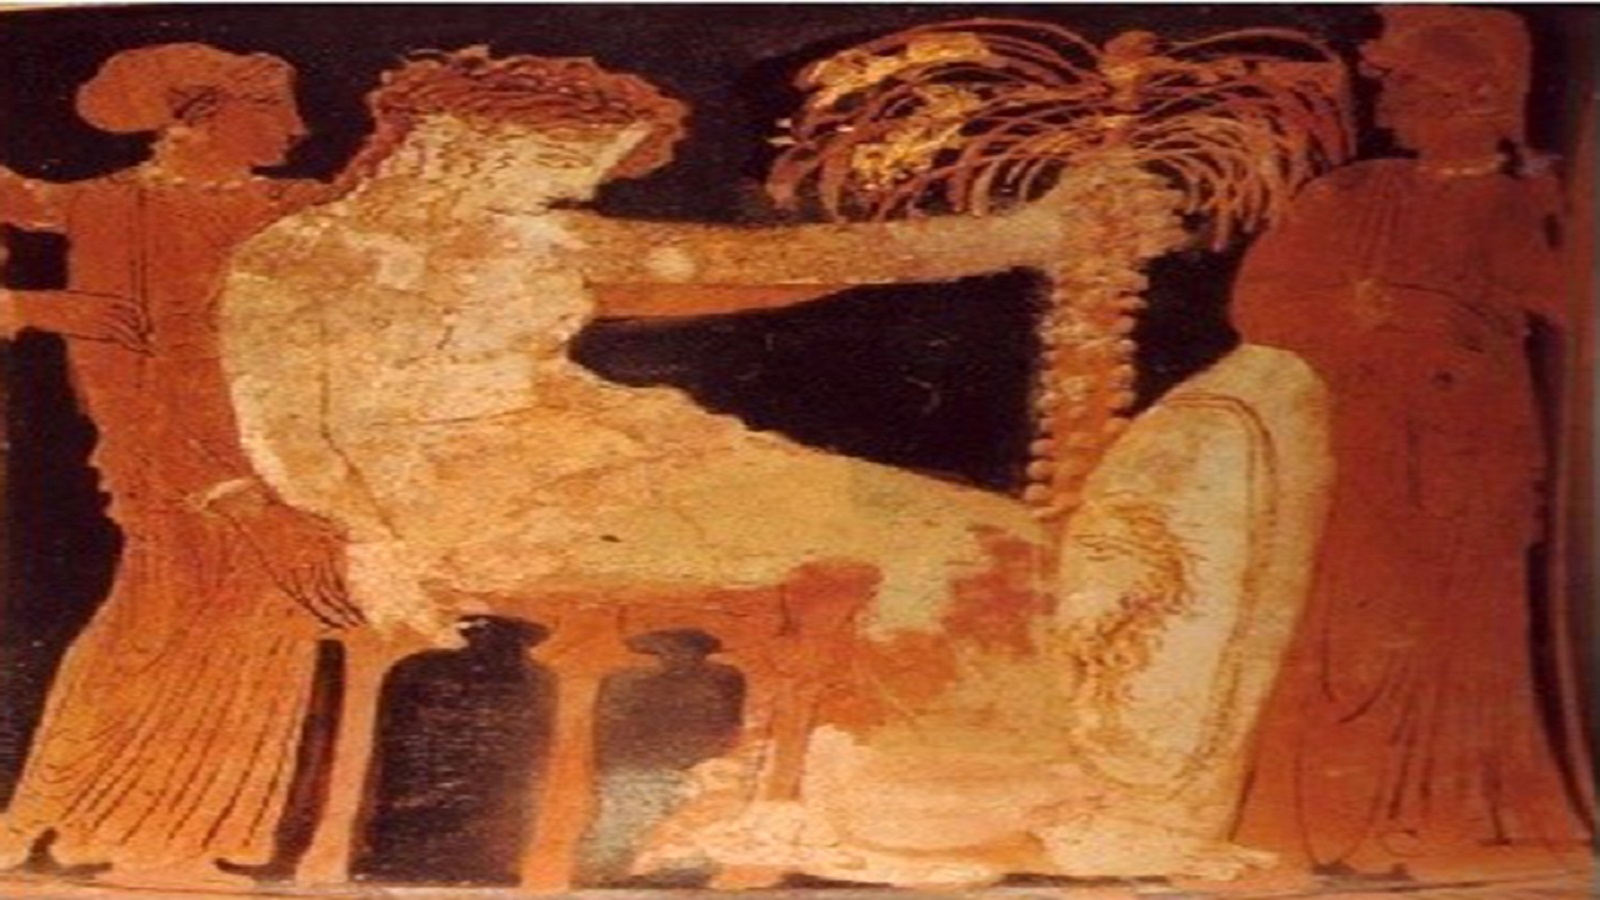 ليتو عند نخلة جزيرة ديلوس، رسم يزين آنية إغريقية من القرن الرابع قبل الميلاد (متحف أثينا الوطني).